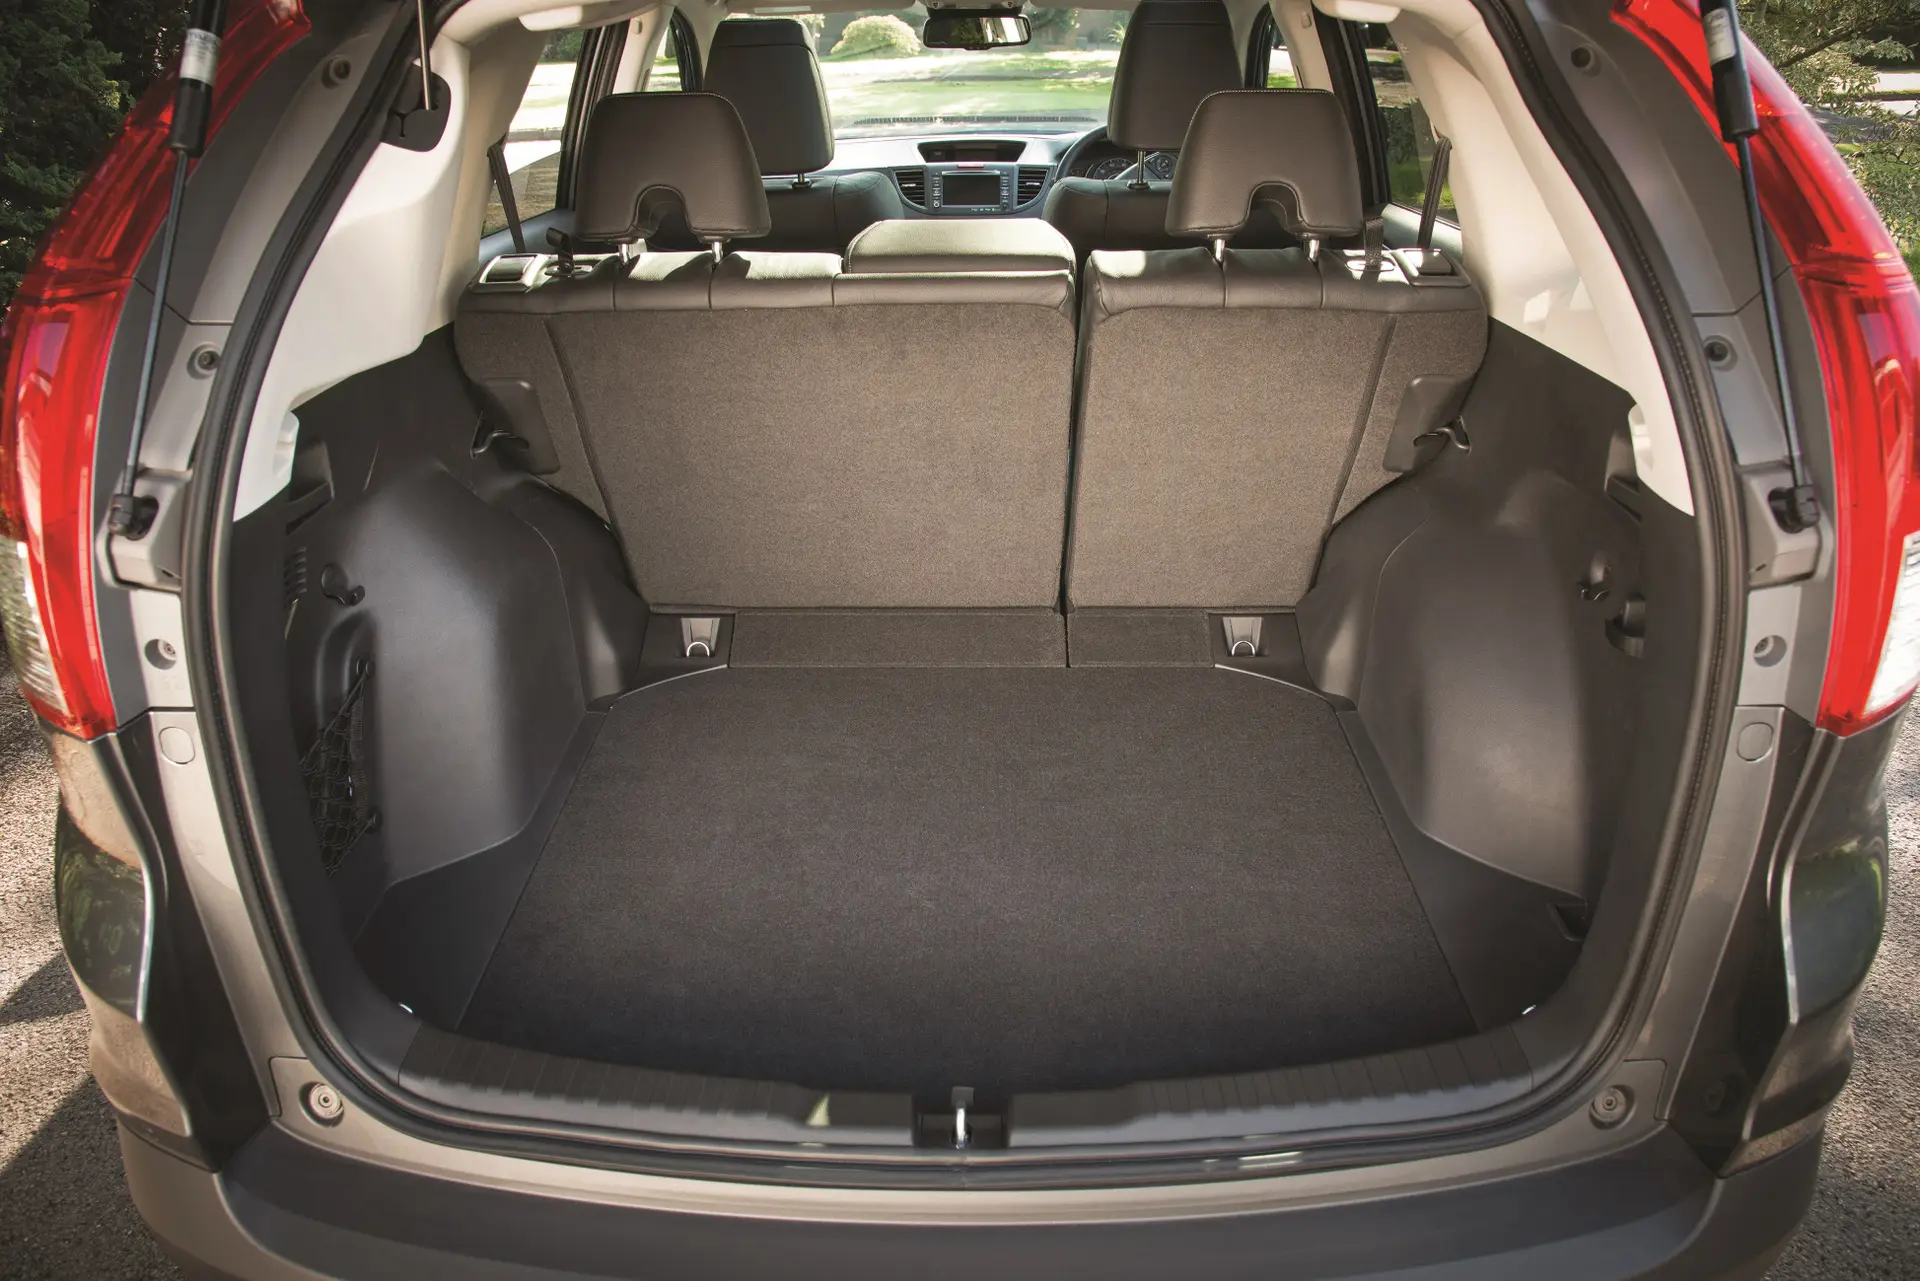 Honda CR-V (2012-2018) Review: interior close up photo of the Honda CR-V boot space